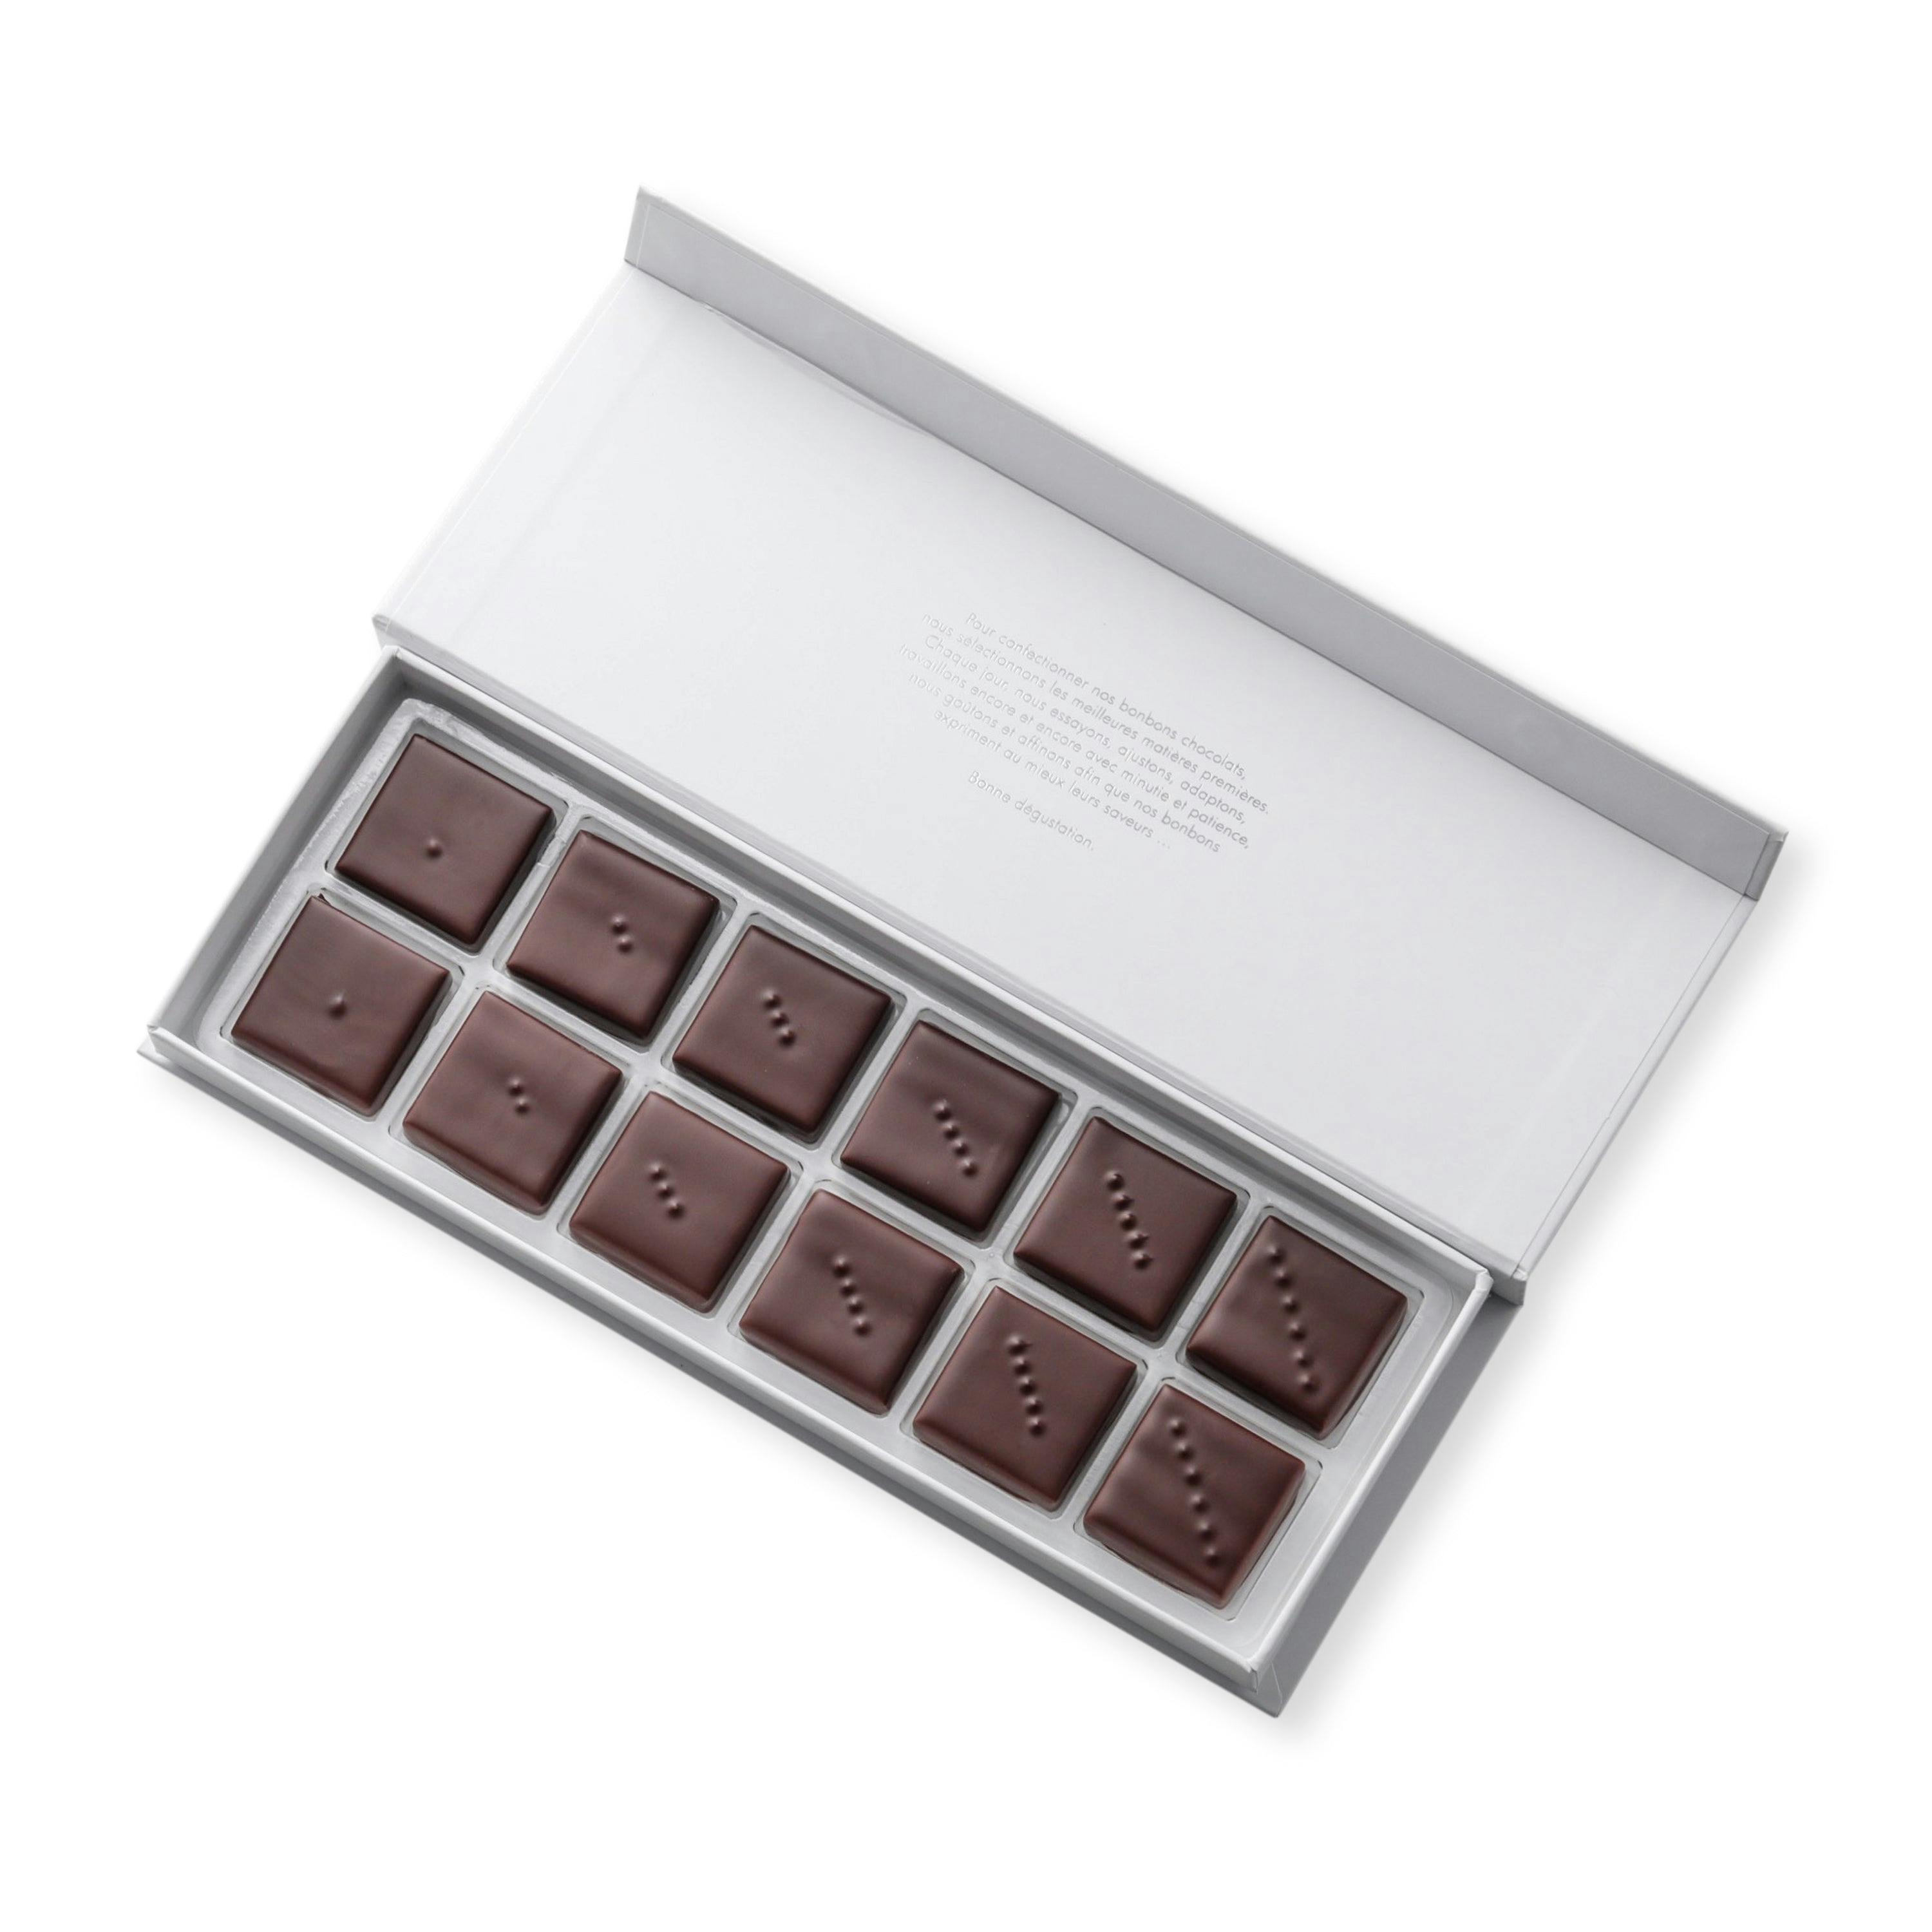 Coffret Ganache pures origines 12 chocolats - Vincent Vallée chocolatier champion du monde